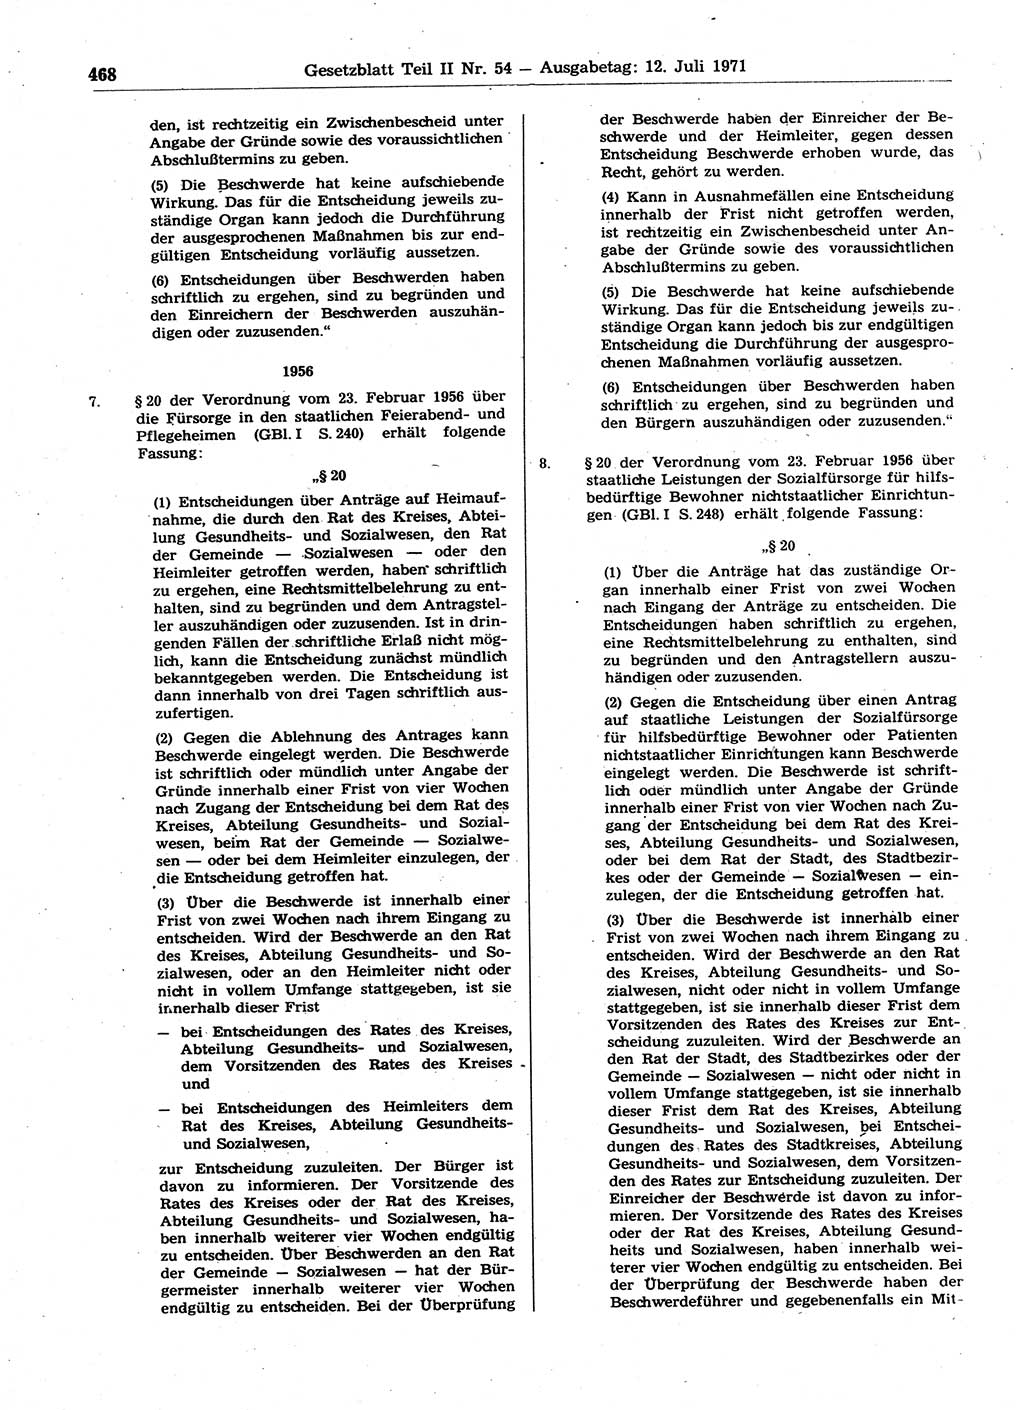 Gesetzblatt (GBl.) der Deutschen Demokratischen Republik (DDR) Teil ⅠⅠ 1971, Seite 468 (GBl. DDR ⅠⅠ 1971, S. 468)